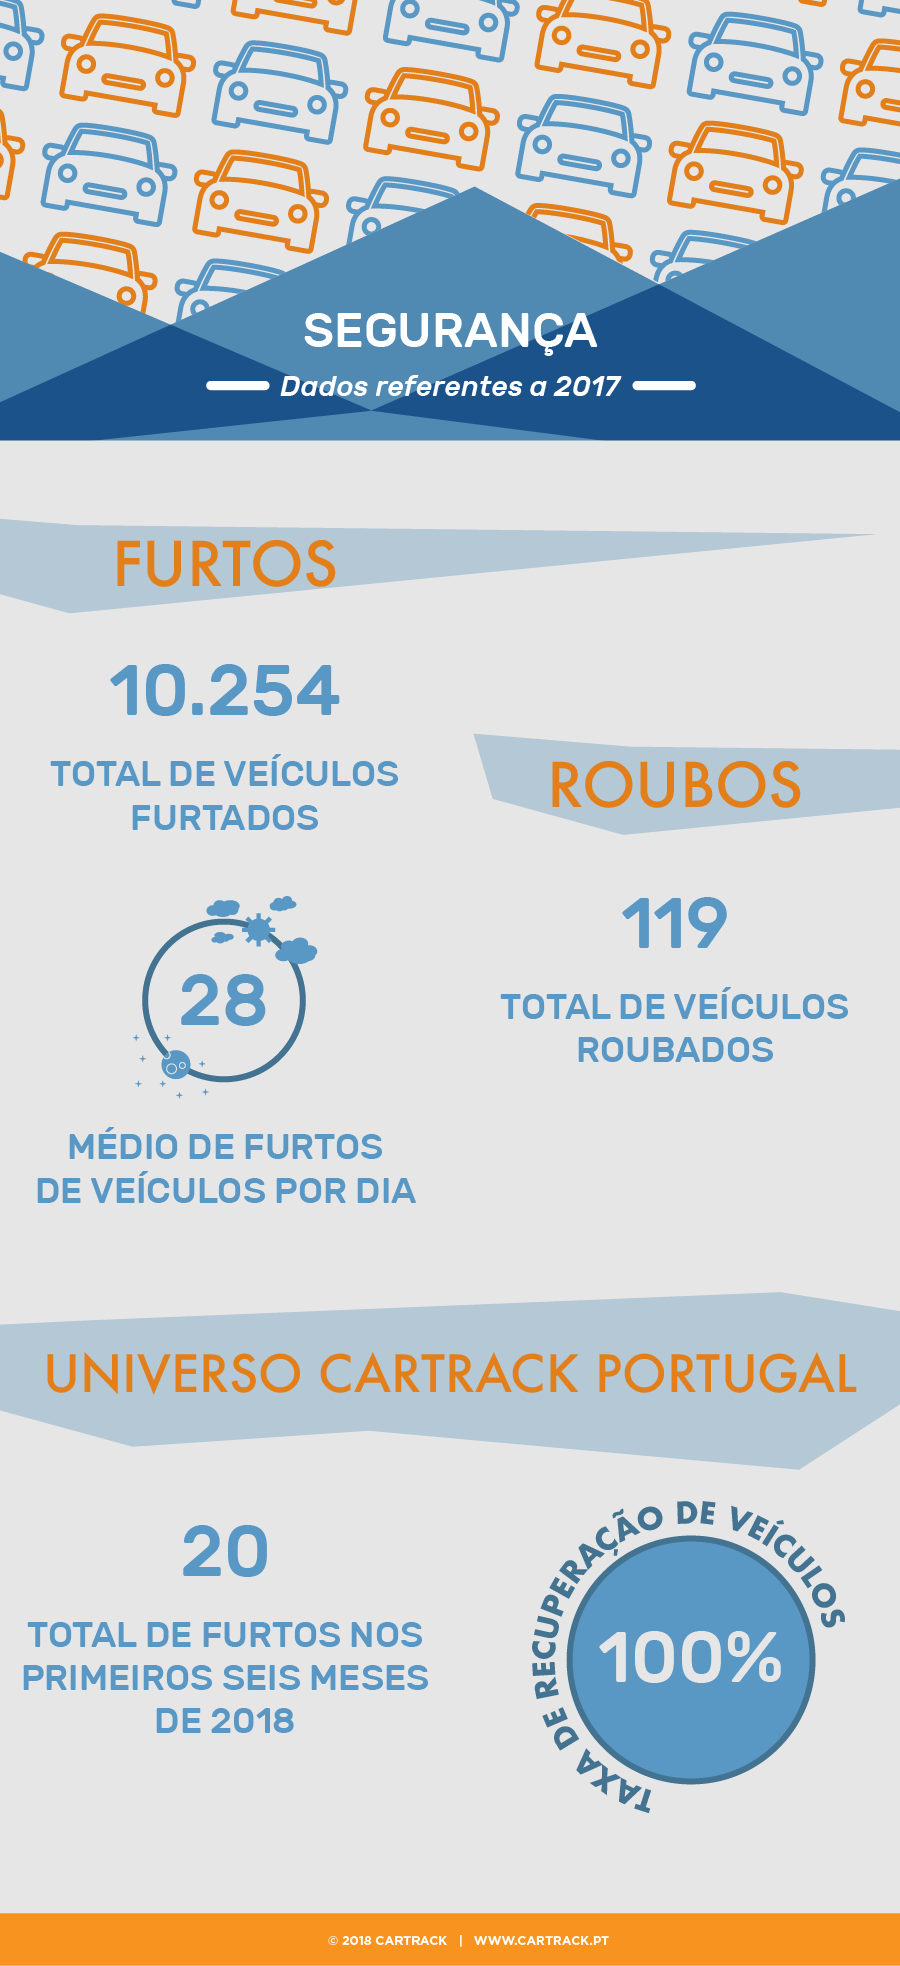 cartrack, portugal, carros, condução, sustentabilidade, mobilidade, parque automóvel, segurança, furtos, roubo, ambiente, economia, cartrack portugal, sempre em controlo